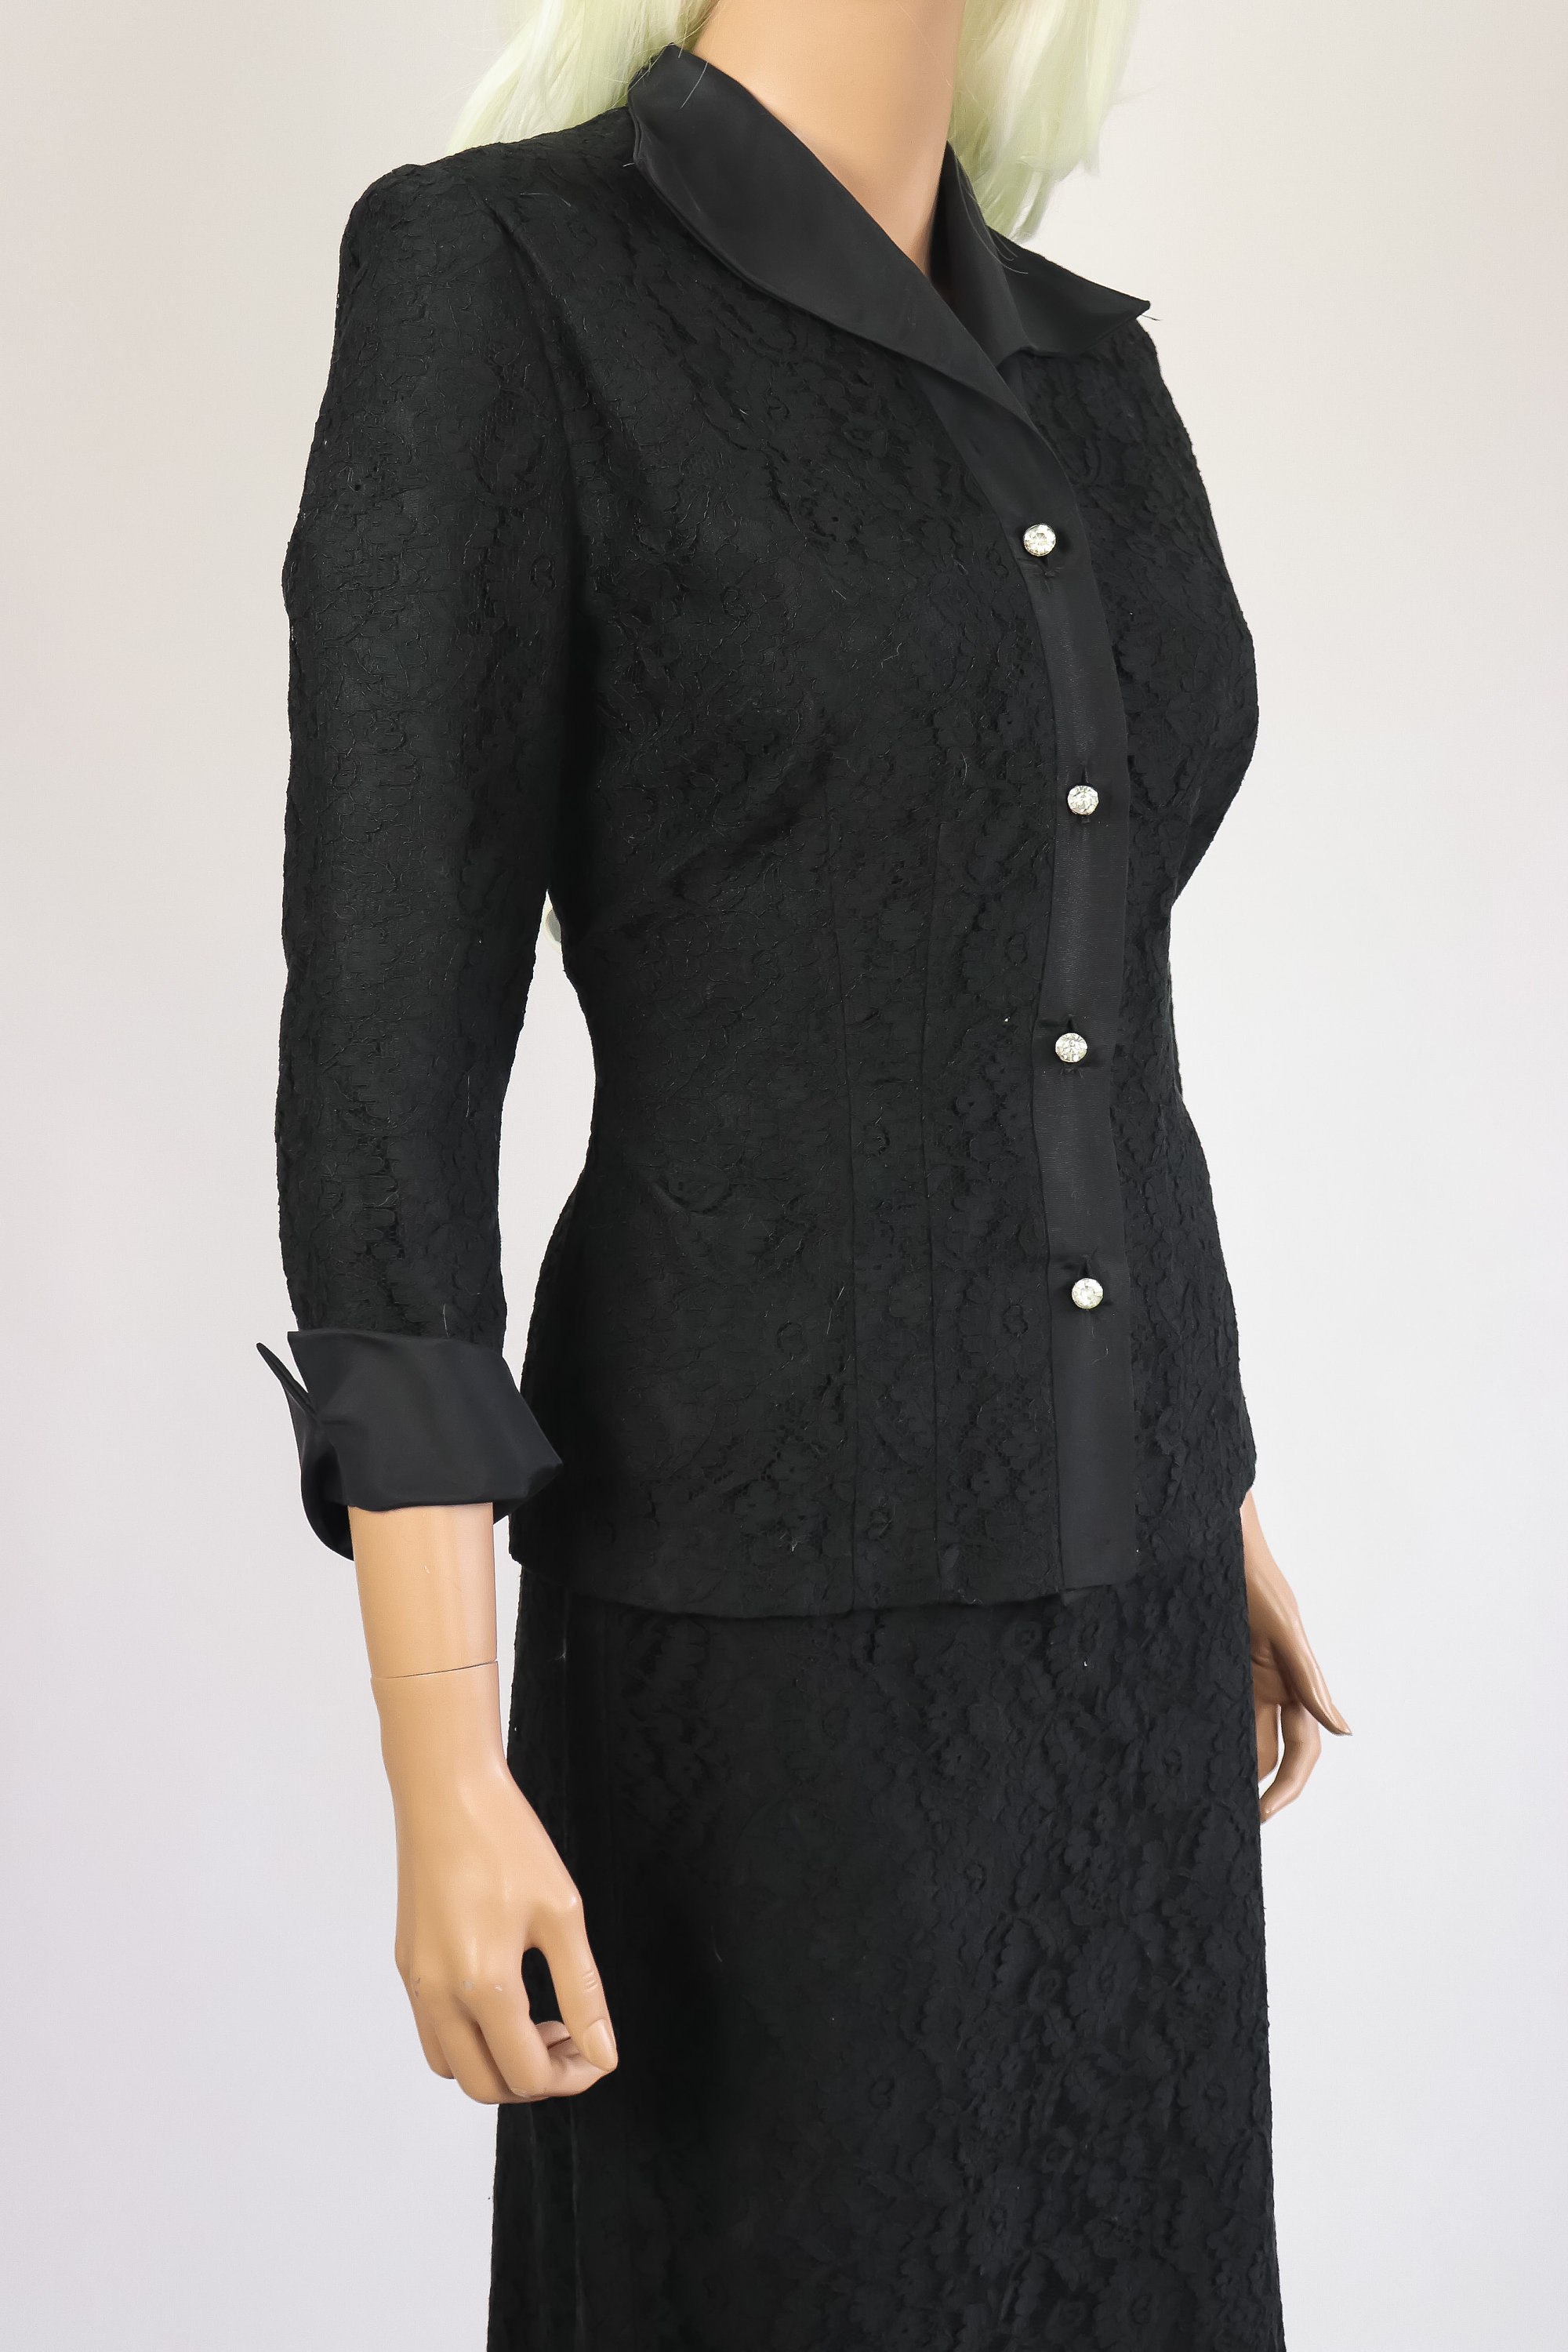 40s Suit 1940s Lace Dress Jacket and Skirt Set Noir Black | Etsy